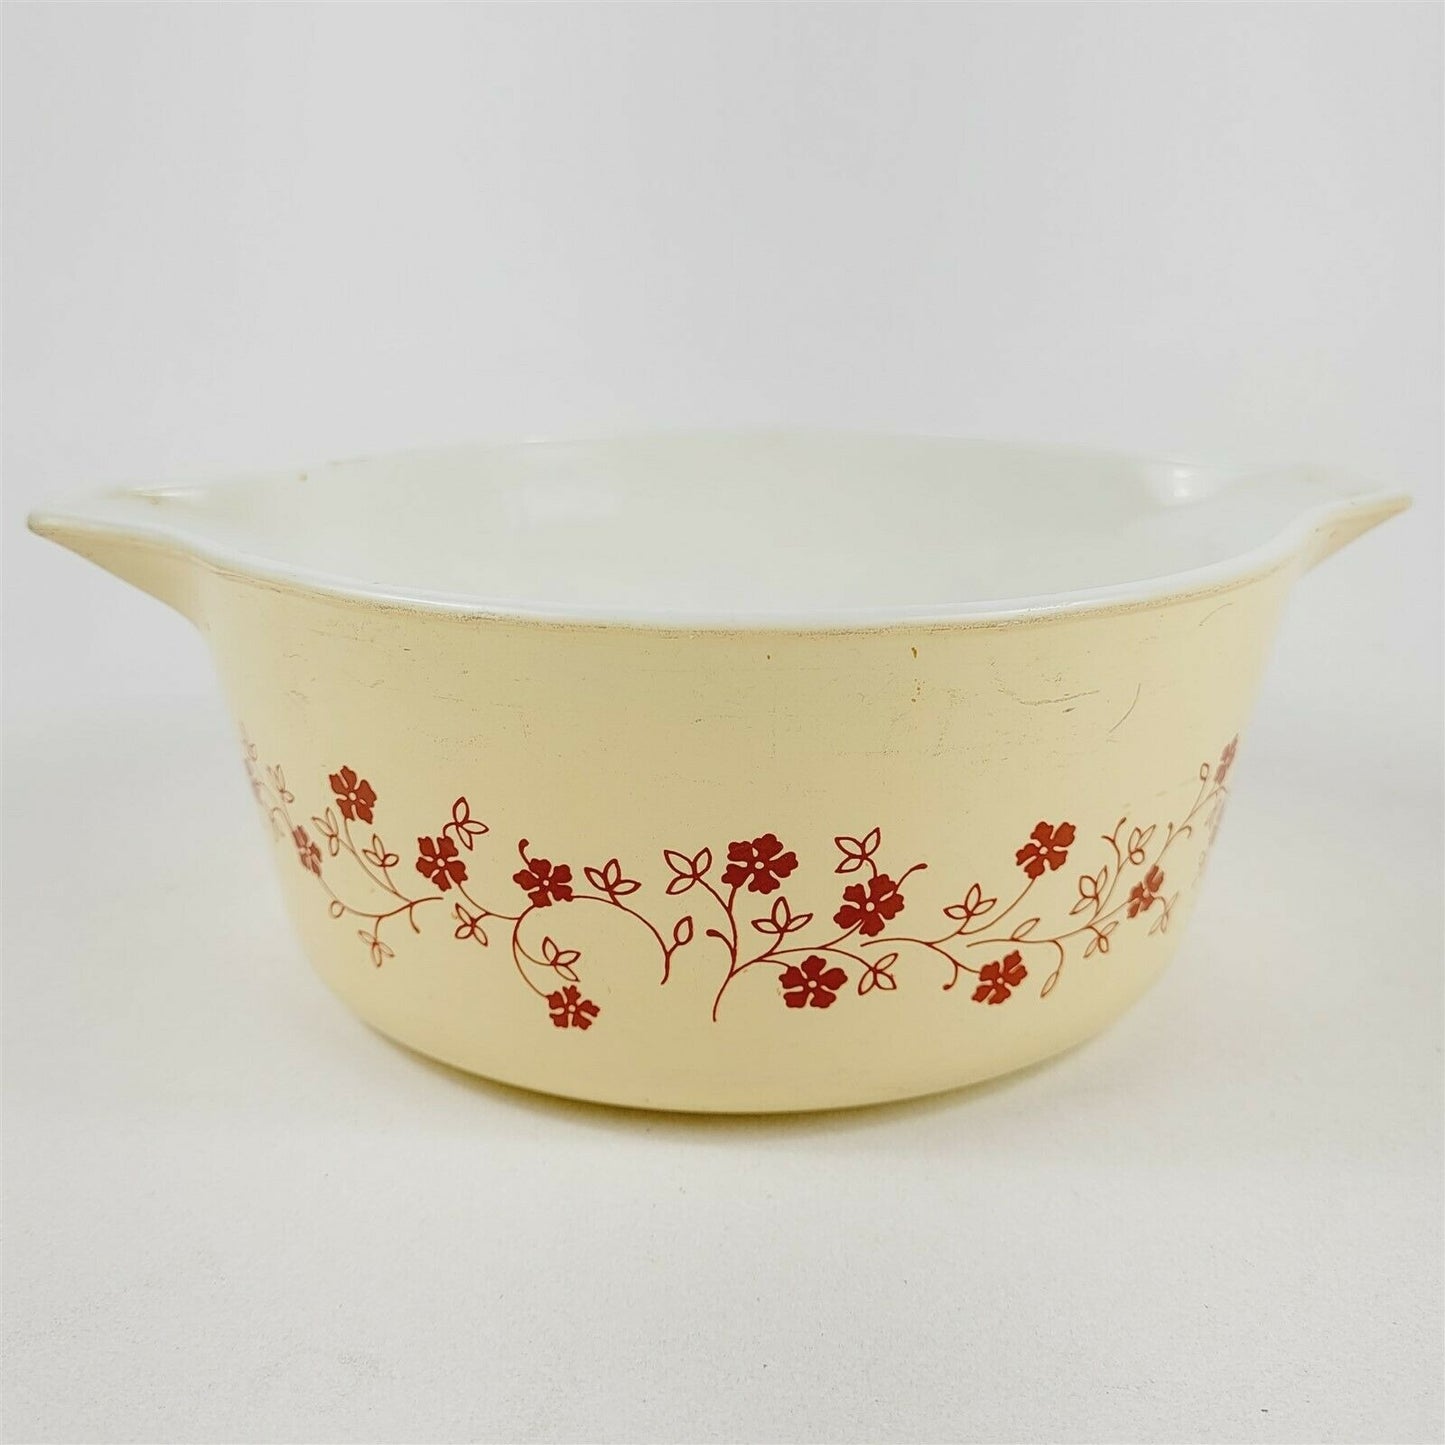 Vintage Pyrex Trailing Flowers Casserole Dish 475 2.5L - No Lid